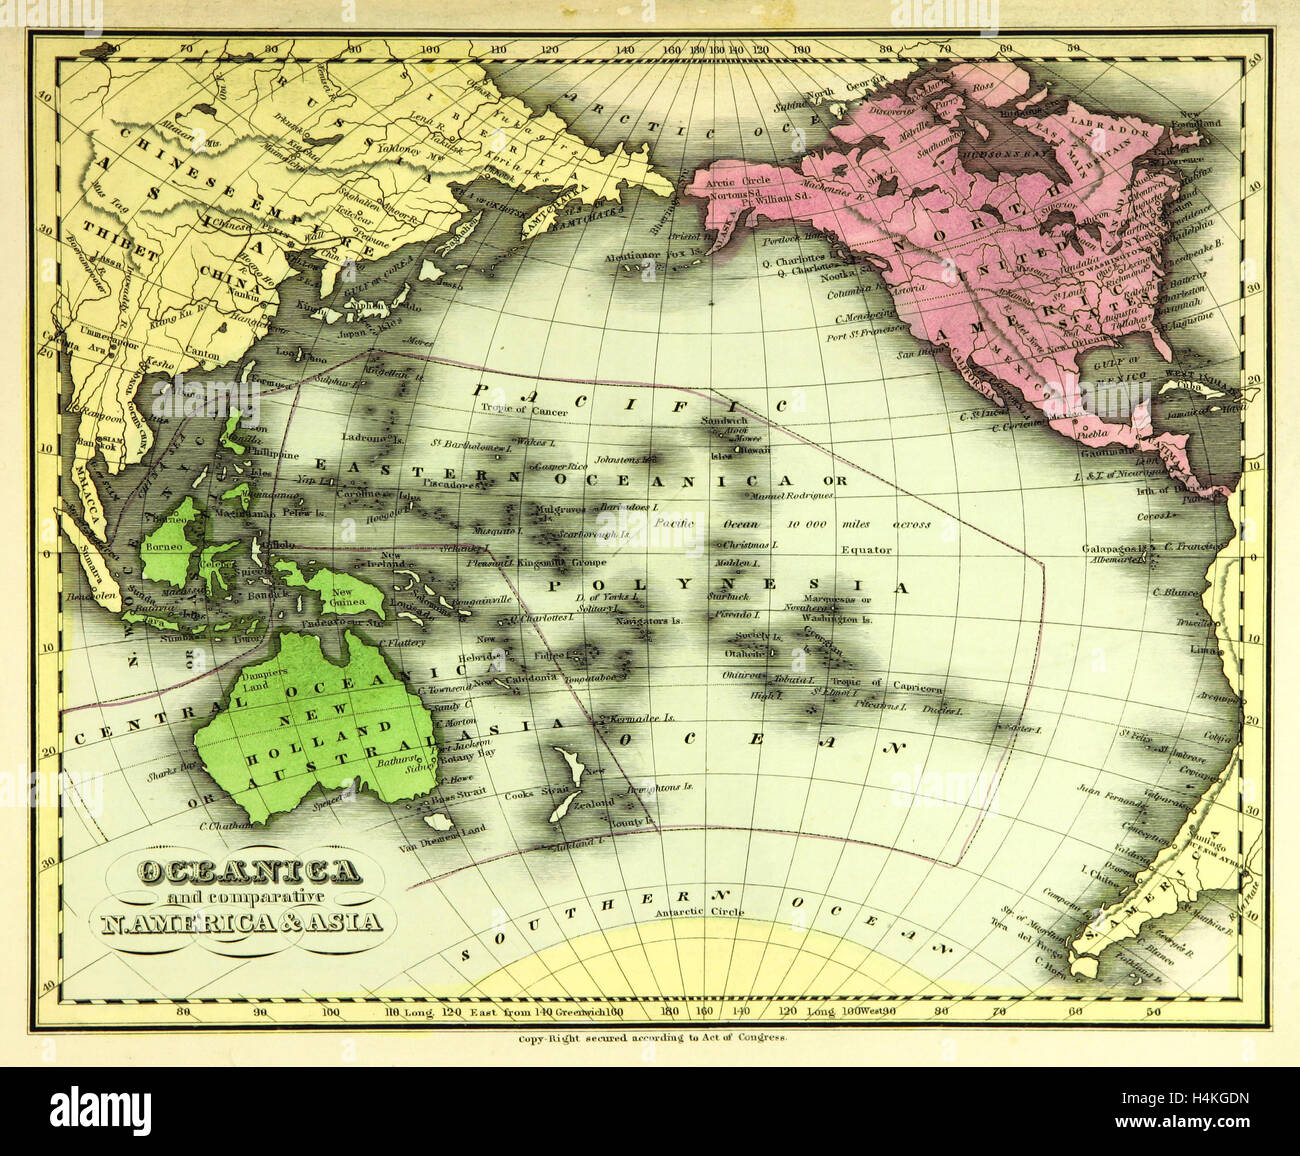 Karte von Ozeanien, auch bekannt als Oceanica, ist eine Region in den Mittelpunkt der Inseln des tropischen Pazifiks, 19. Jahrhundert Gravur Stockfoto